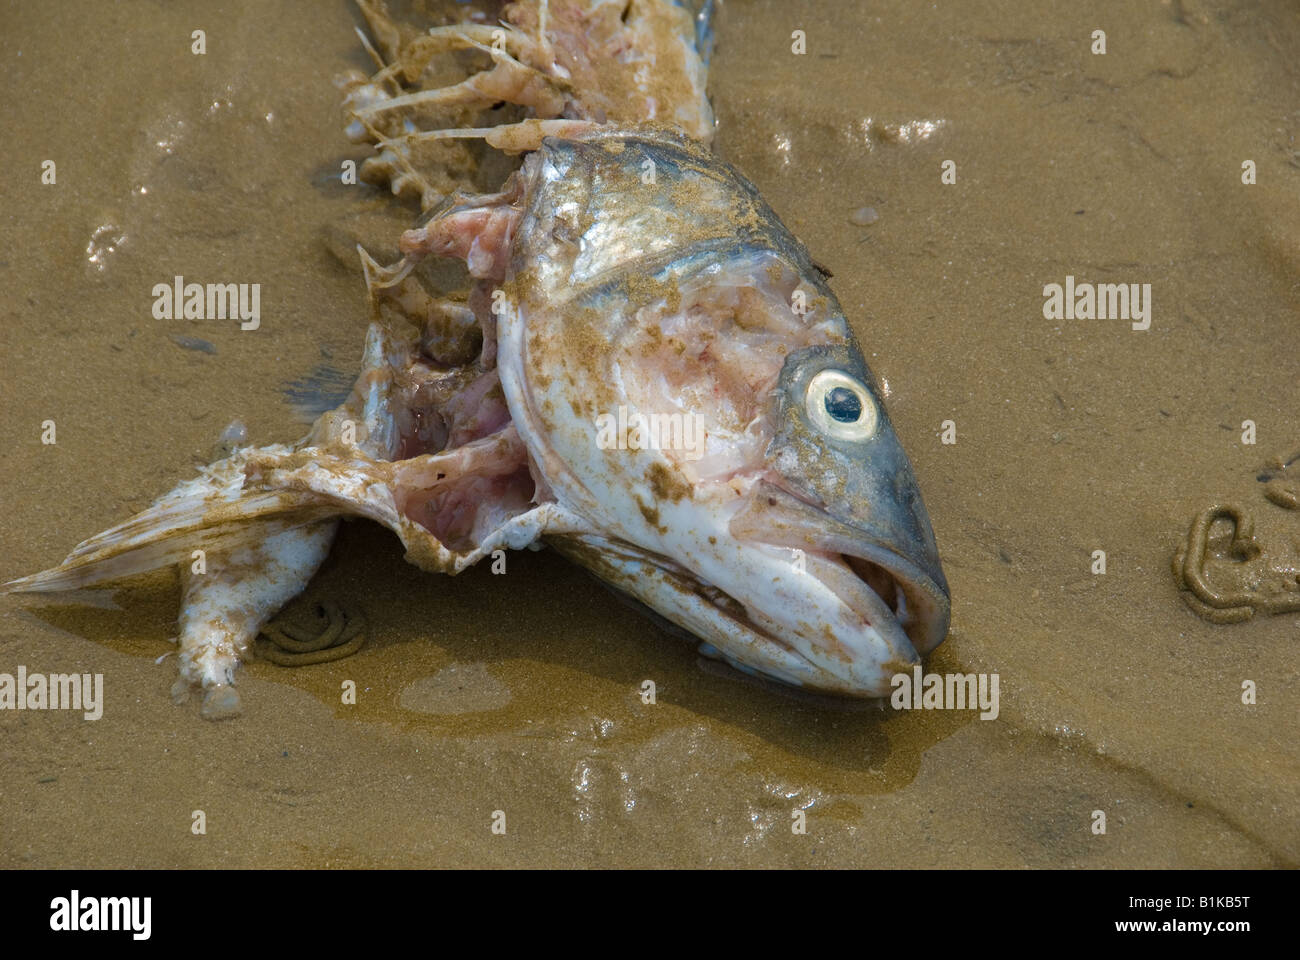 Ein toter ausgenommen Fisch am Strand liegen Stockfoto